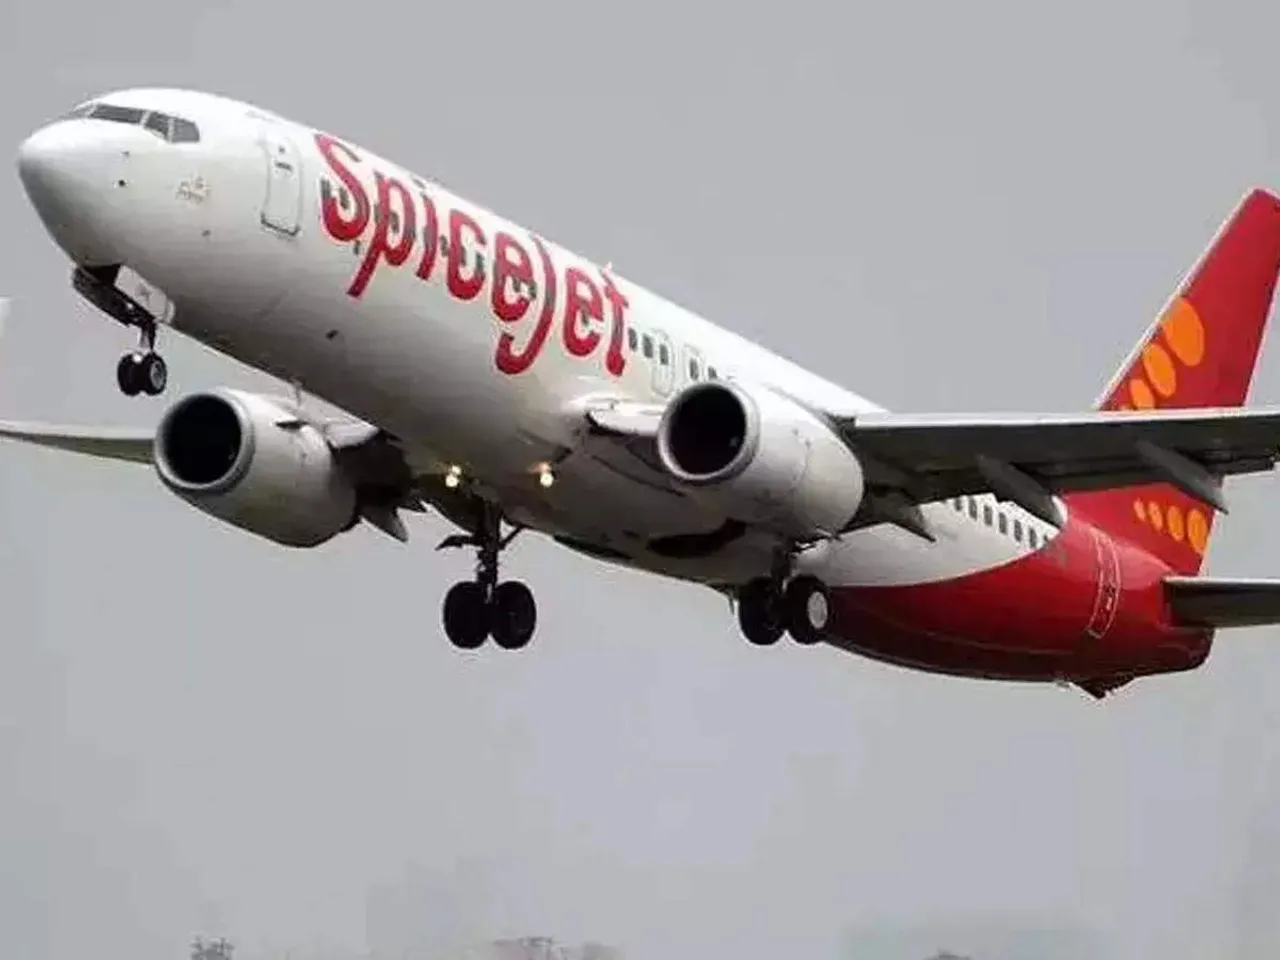 False warning in cockpit: Srinagar-bound SpiceJet flight returns to Delhi airport